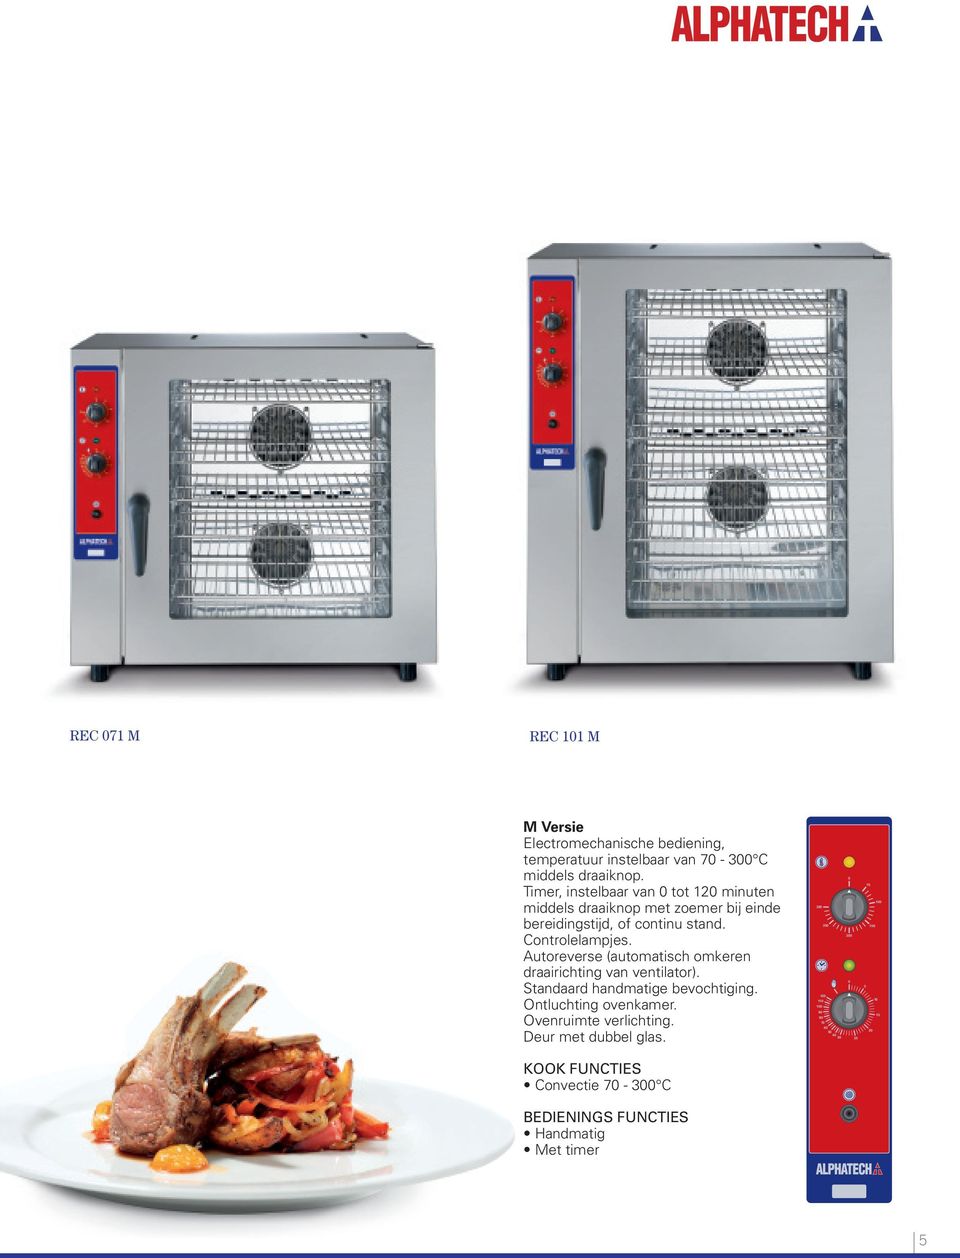 Autoreverse (automatisch omkeren draairichting van ventilator). Standaard handmatige bevochtiging. Ontluchting ovenkamer.